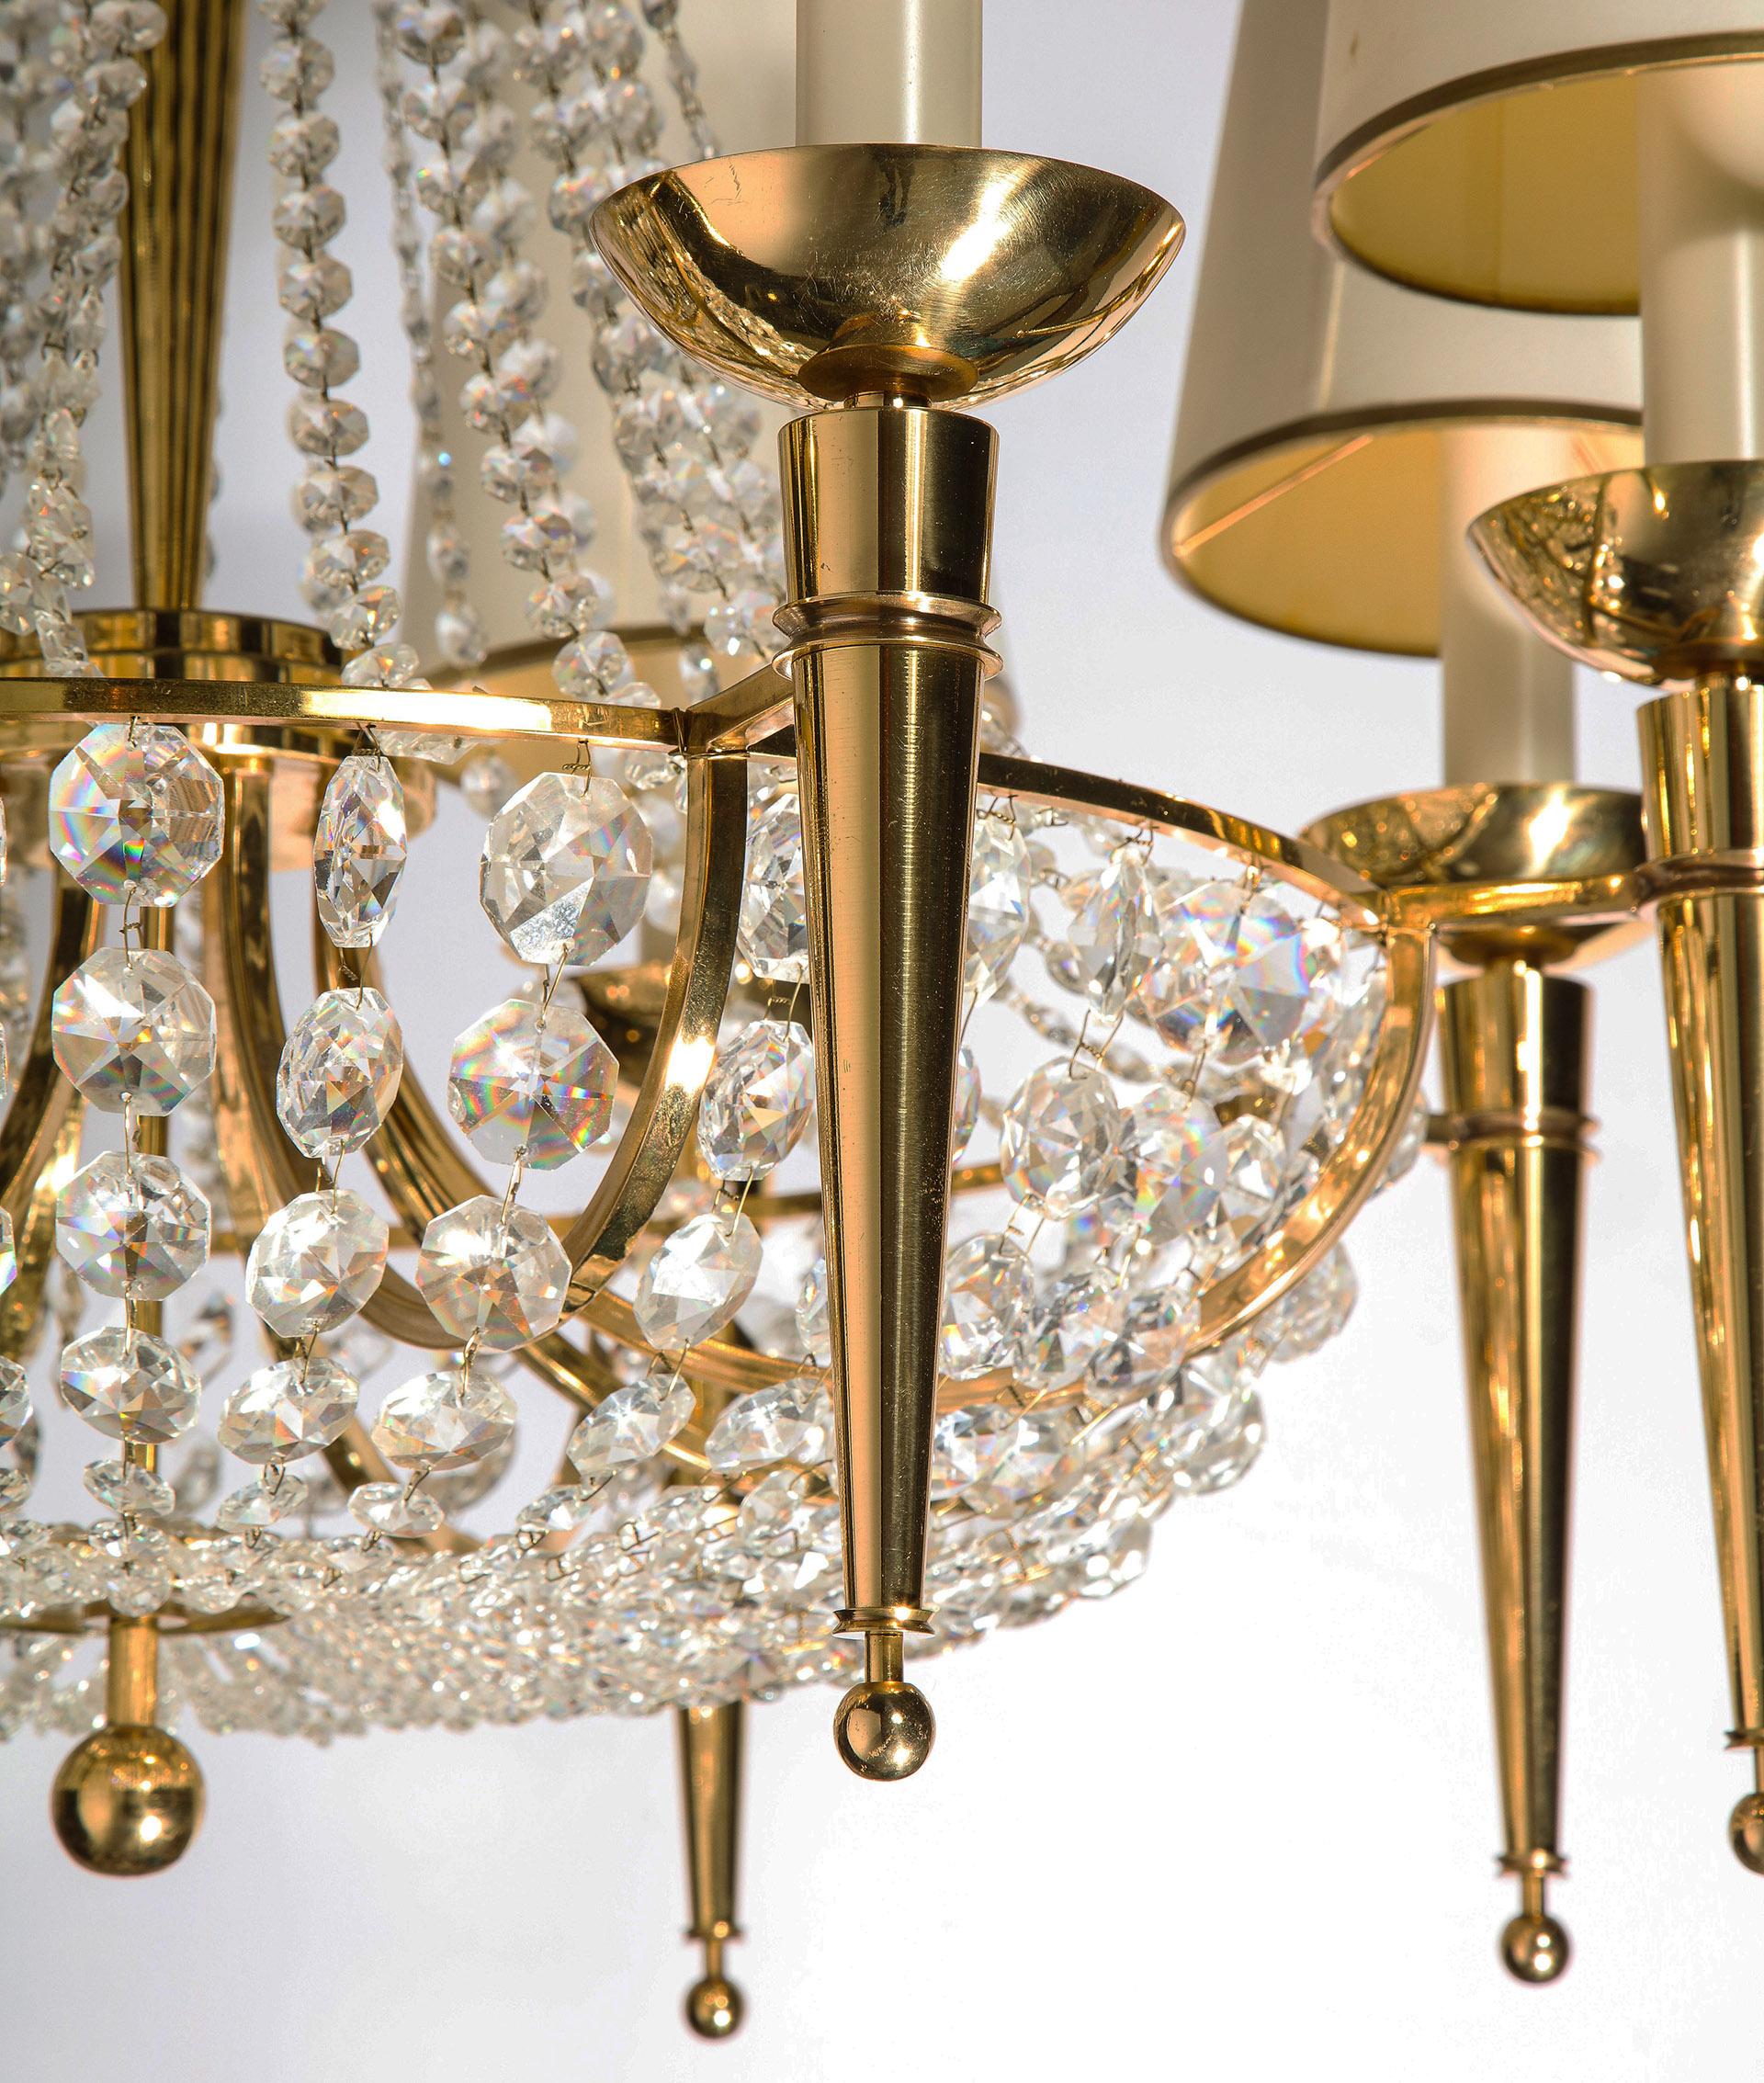 bronze chandelier with crystals